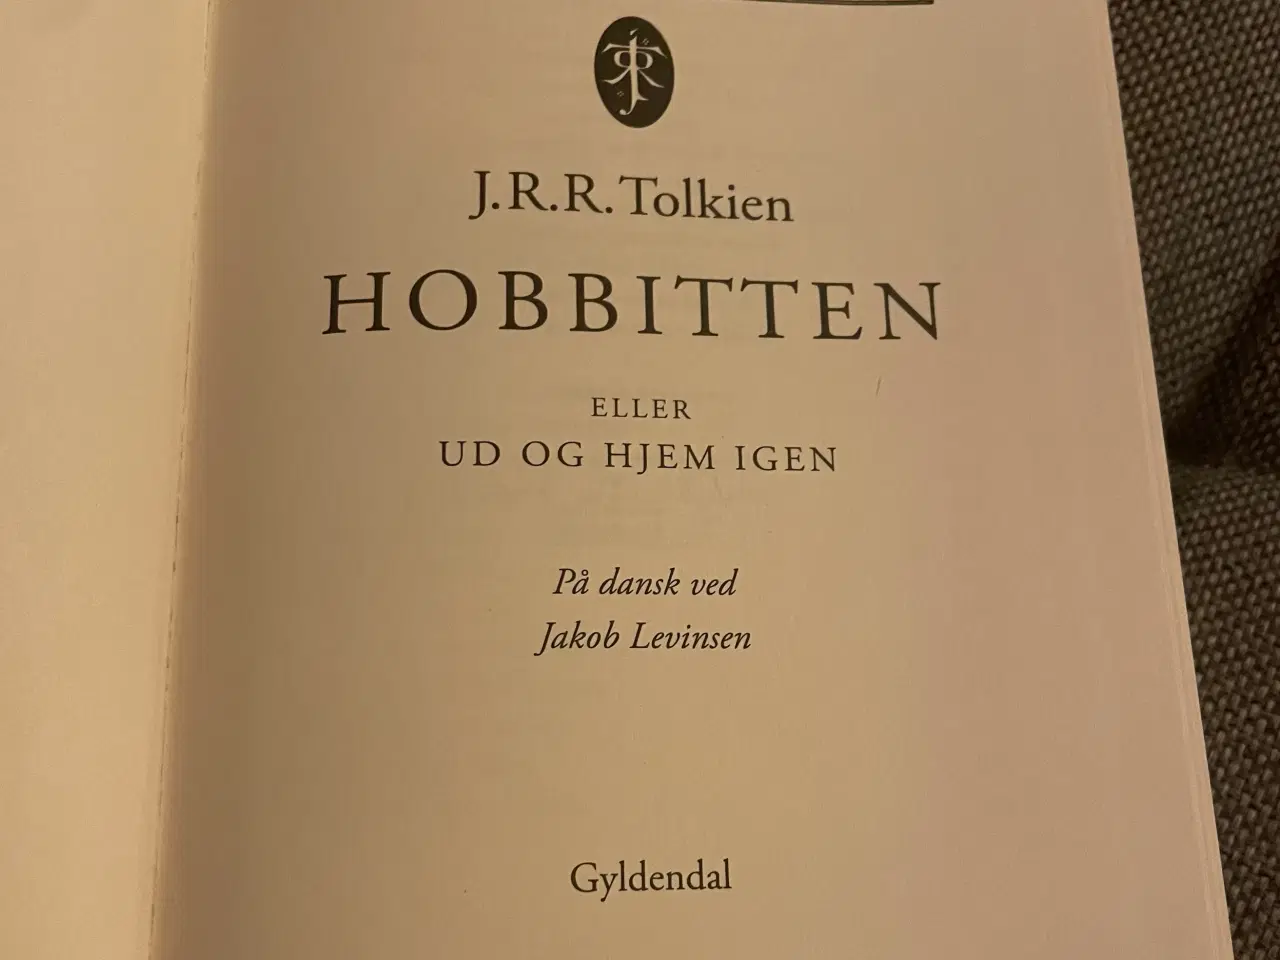 Billede 2 - Bogen Hobbitten af J.R.R. Tolkien på dansk